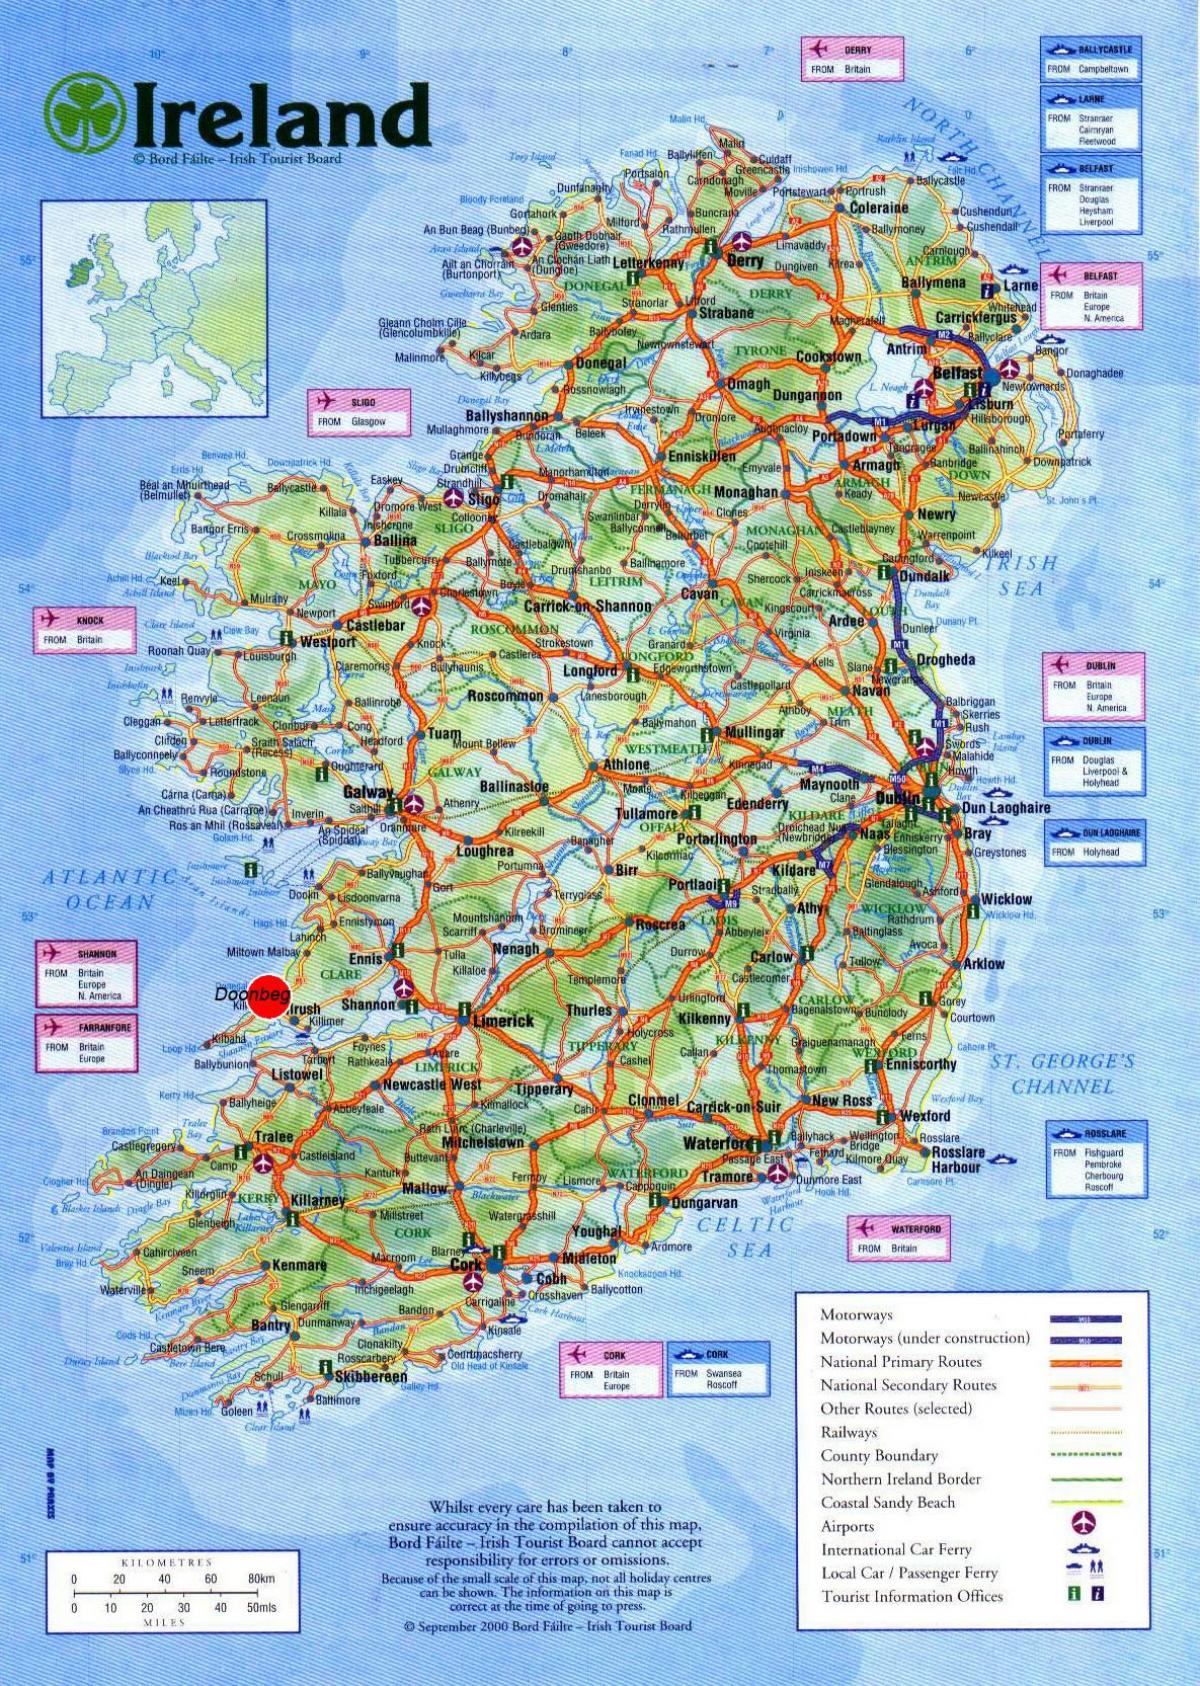 نقشہ آئر لینڈ کے دکھا سیاحوں کی دلچسپی